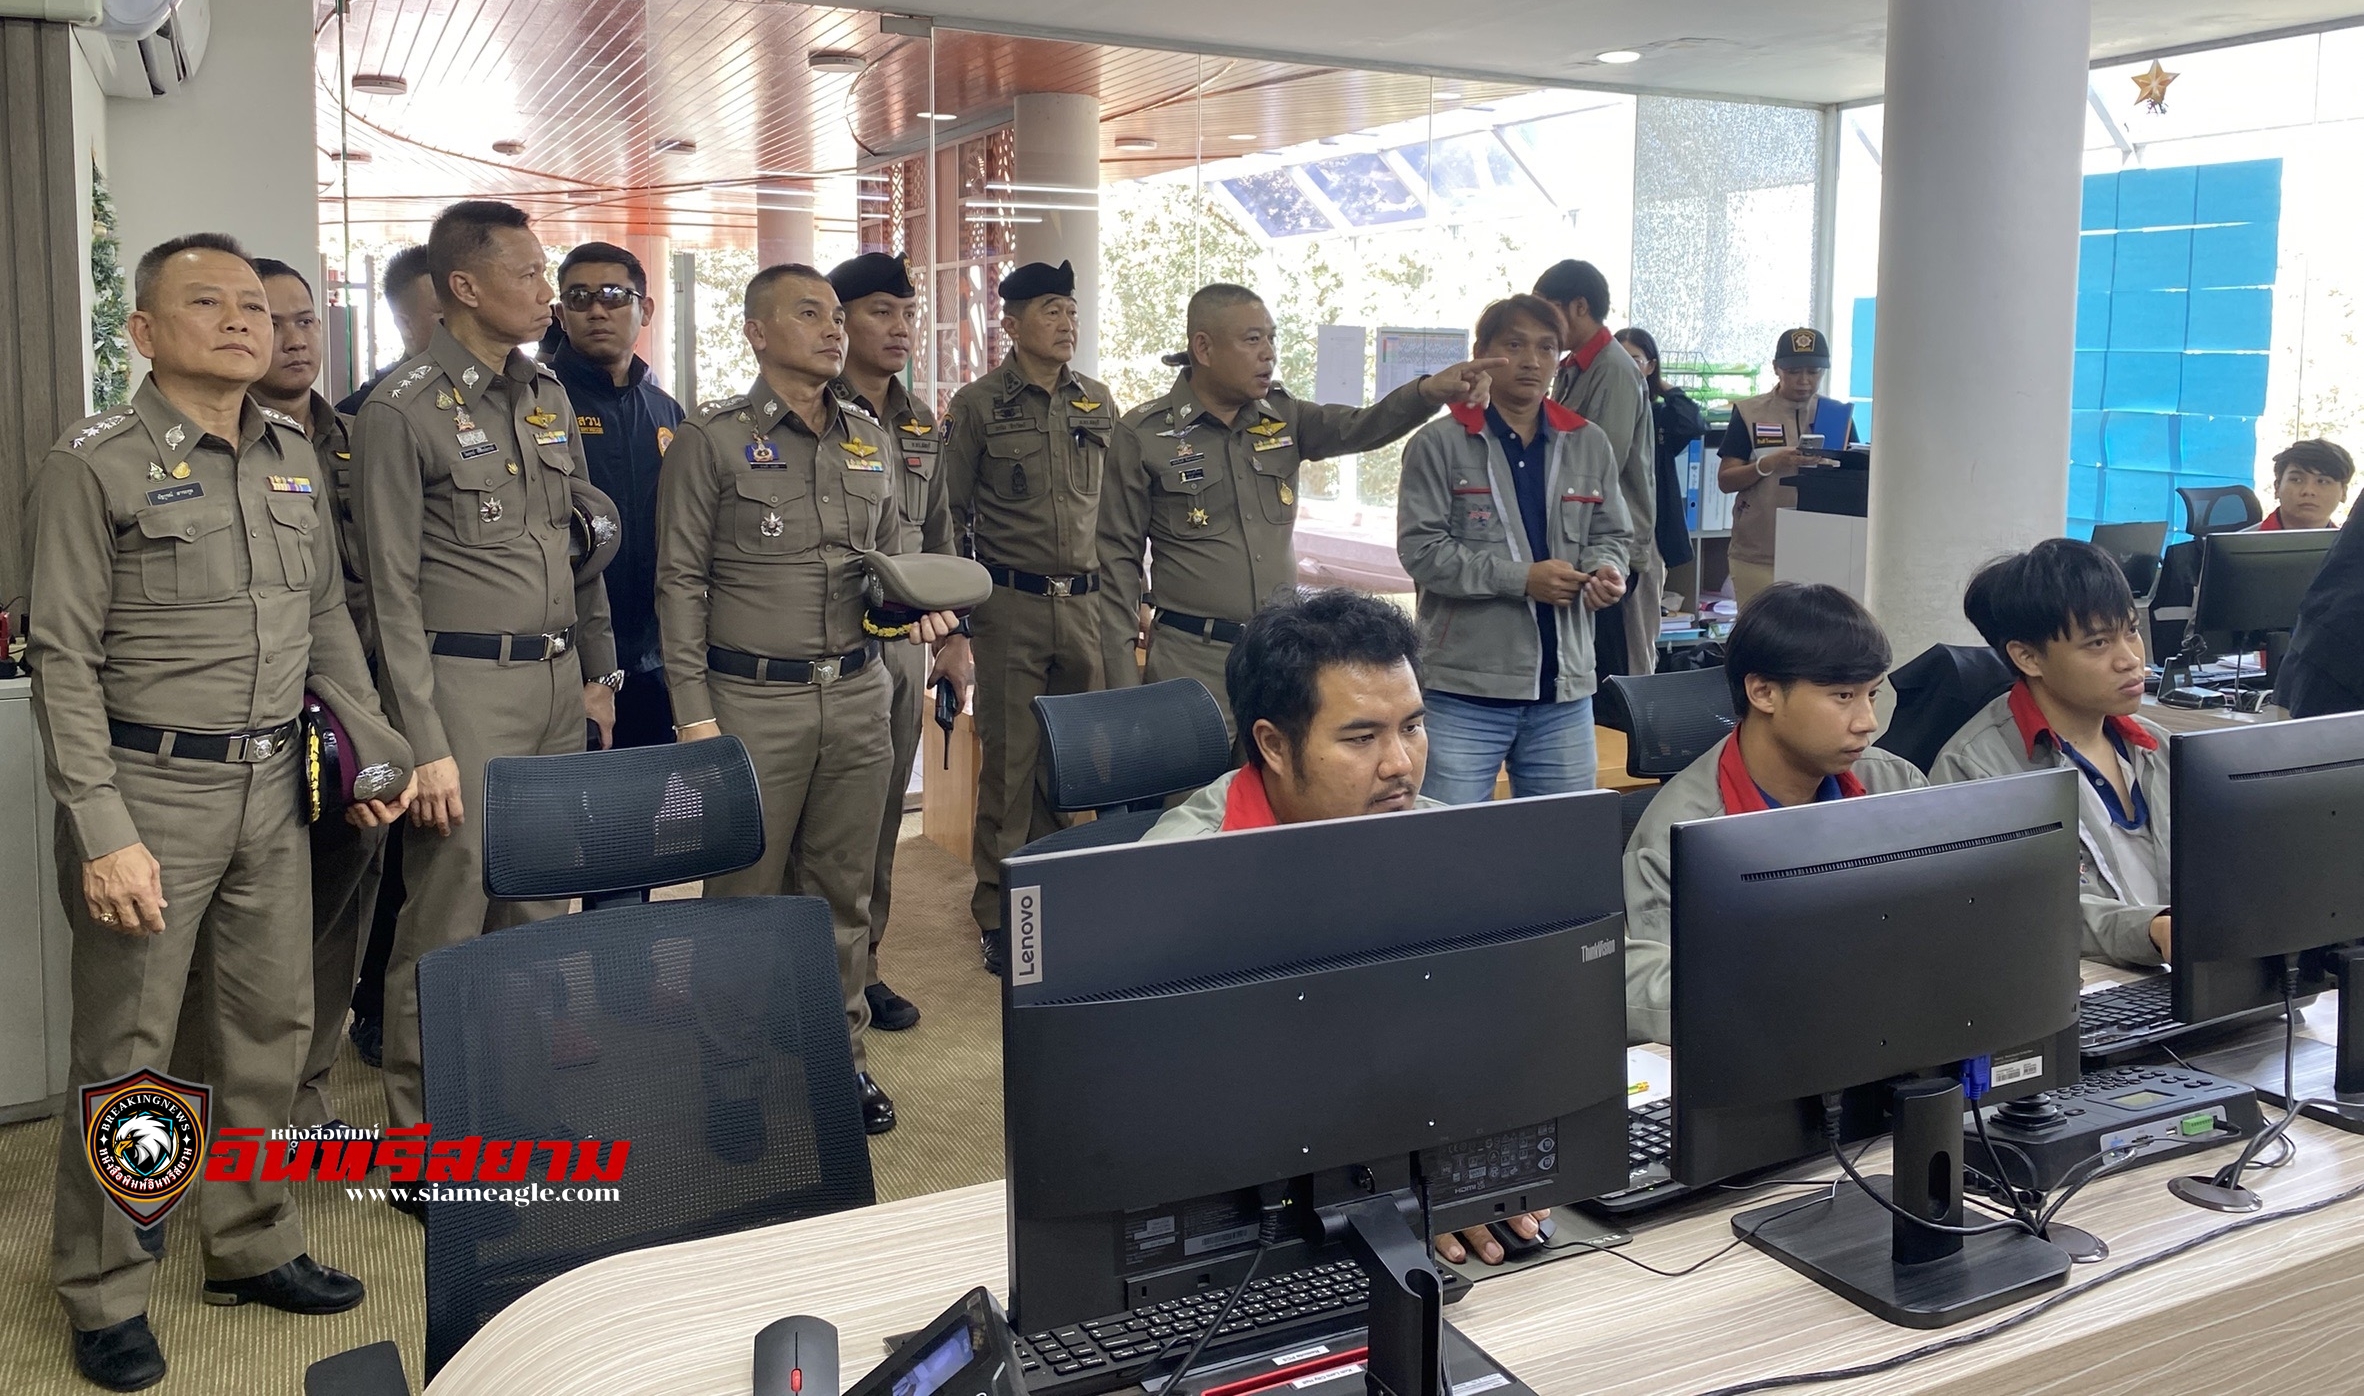 ชลบุรี-ผู้การฯนำทีมลงเกาะล้านสั่งสายตรวจดูแลนักท่องเที่ยวอย่างเข้มงวด